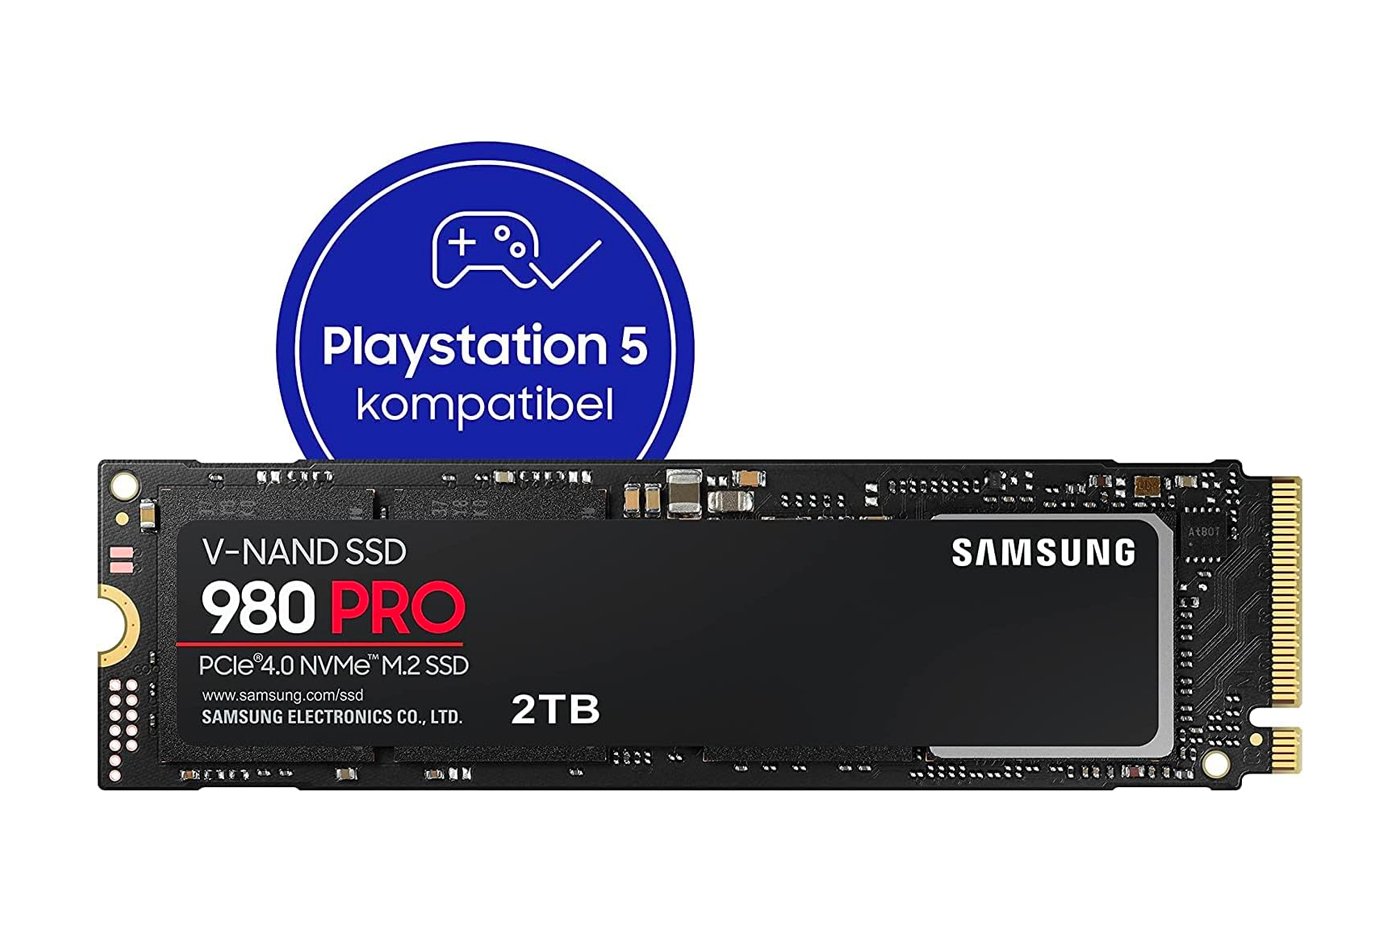 Le Samsung 980 Pro de 2 To est le SSD parfait pour votre PS5 et il